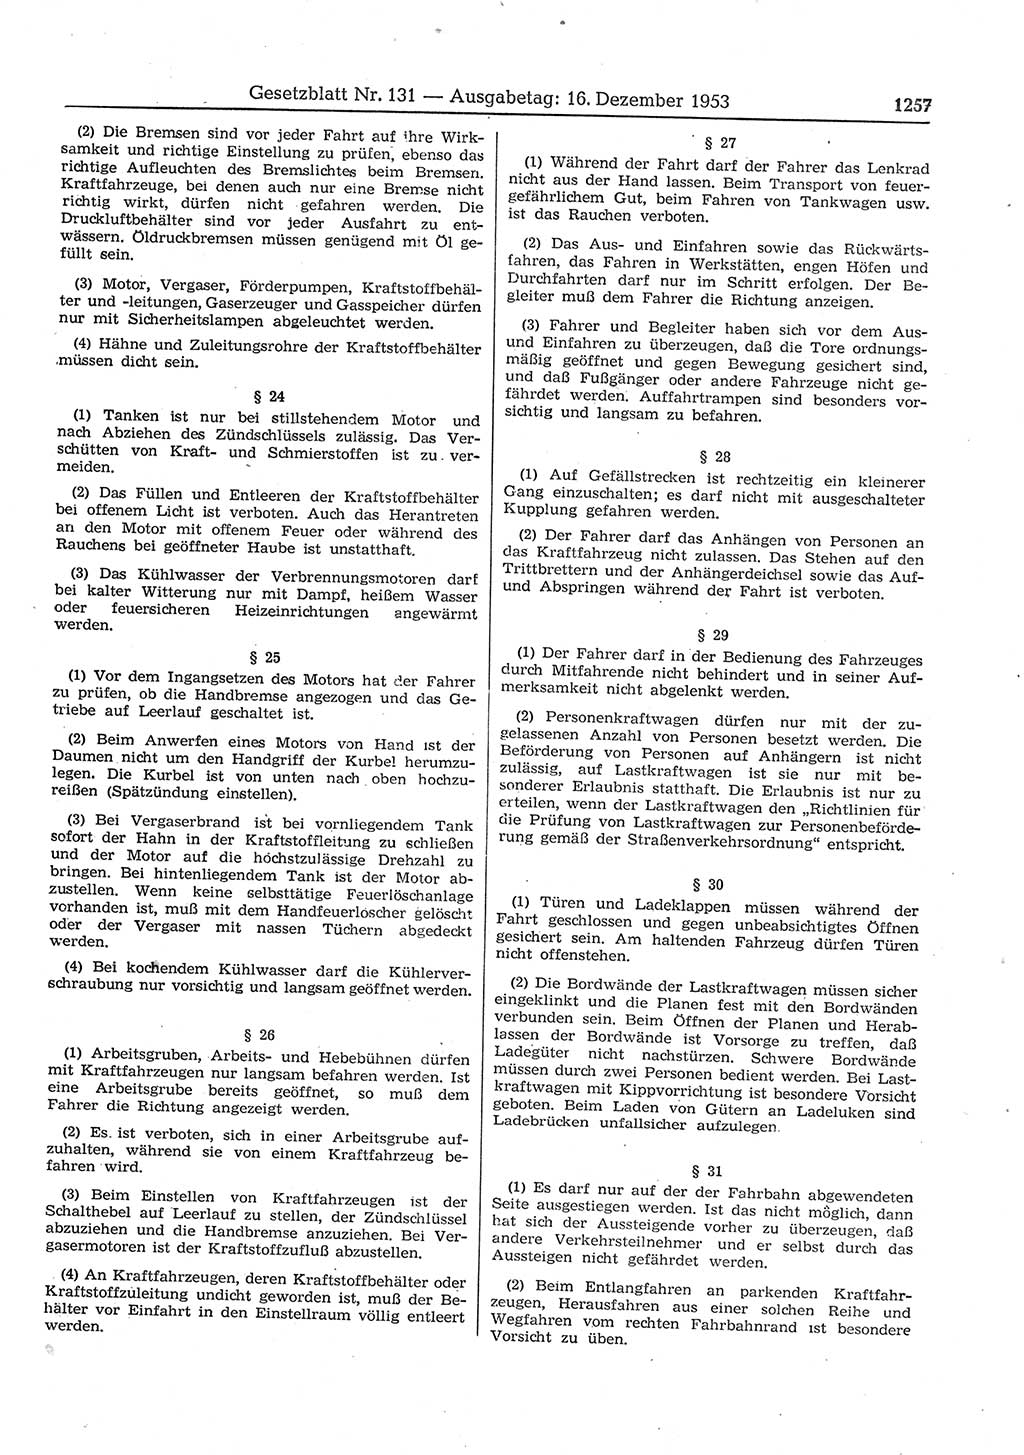 Gesetzblatt (GBl.) der Deutschen Demokratischen Republik (DDR) 1953, Seite 1257 (GBl. DDR 1953, S. 1257)